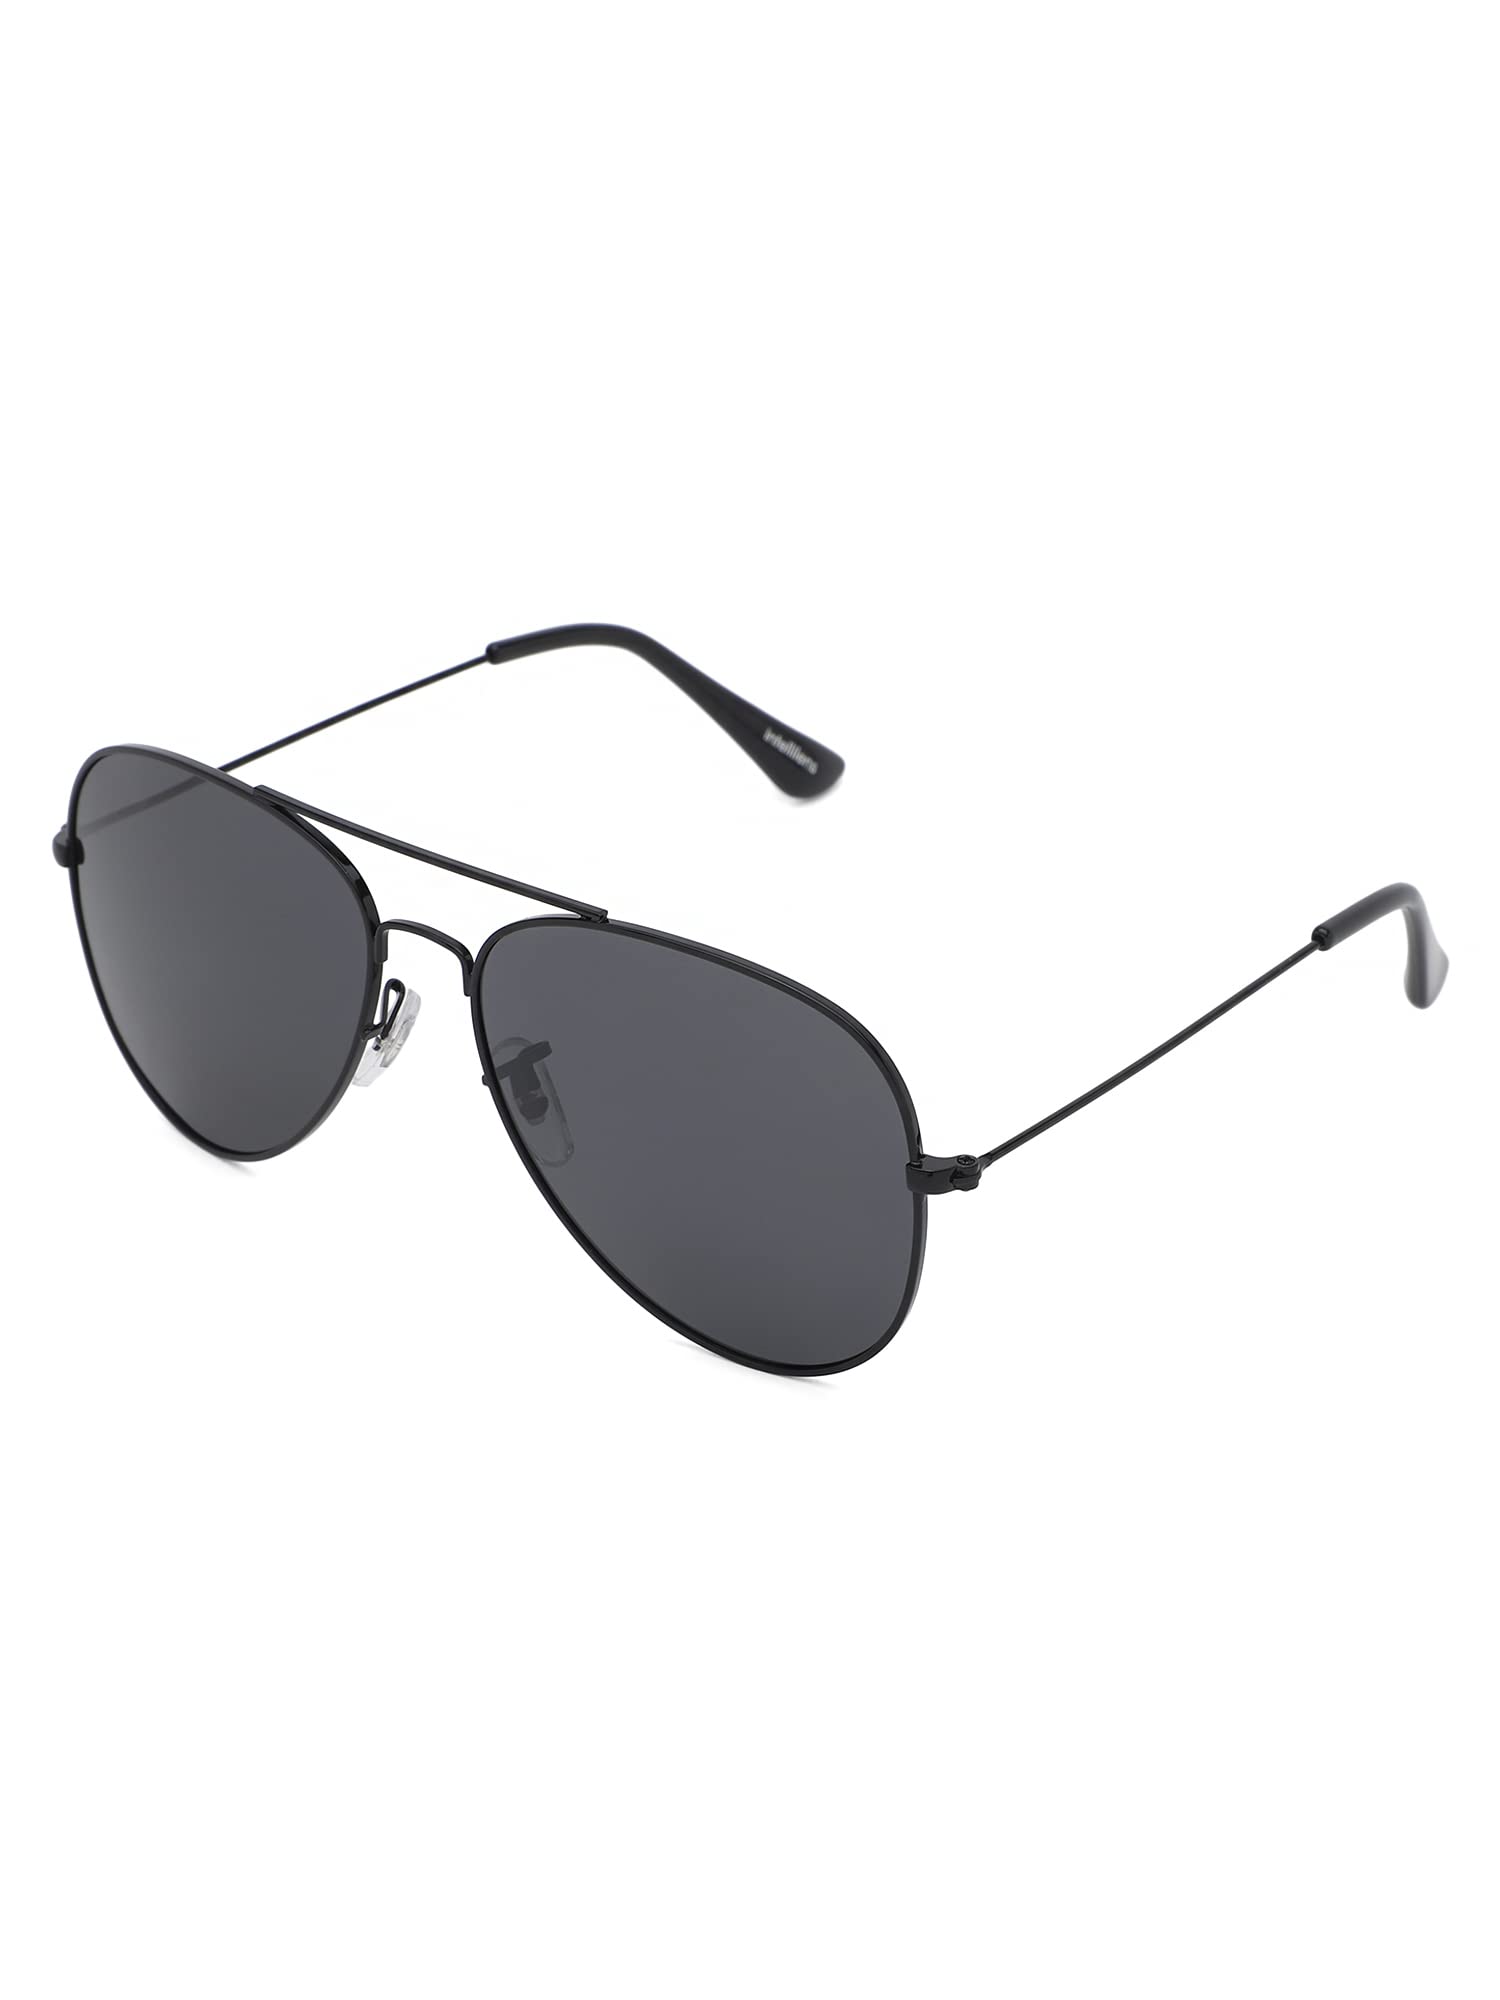 Intellilens Aviator Polarized & UV Protected Sunglasses For Men & Women | Goggles for Men & Women (Black) (59-21-131) - Pack of 1